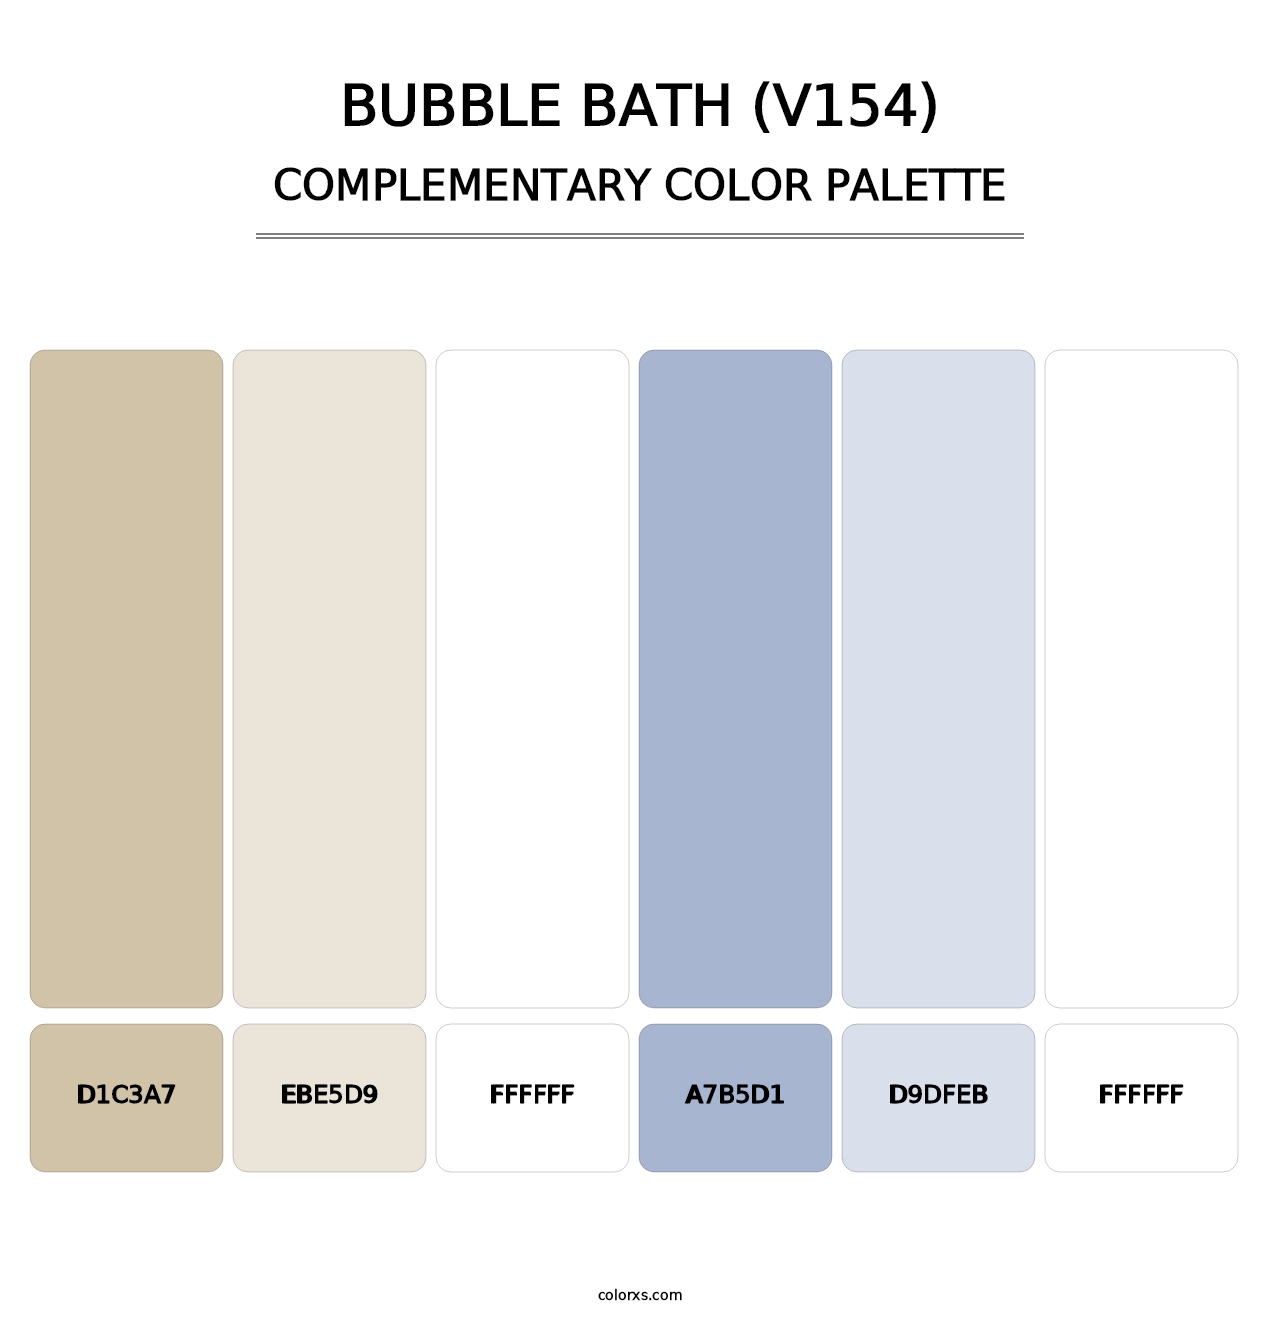 Bubble Bath (V154) - Complementary Color Palette